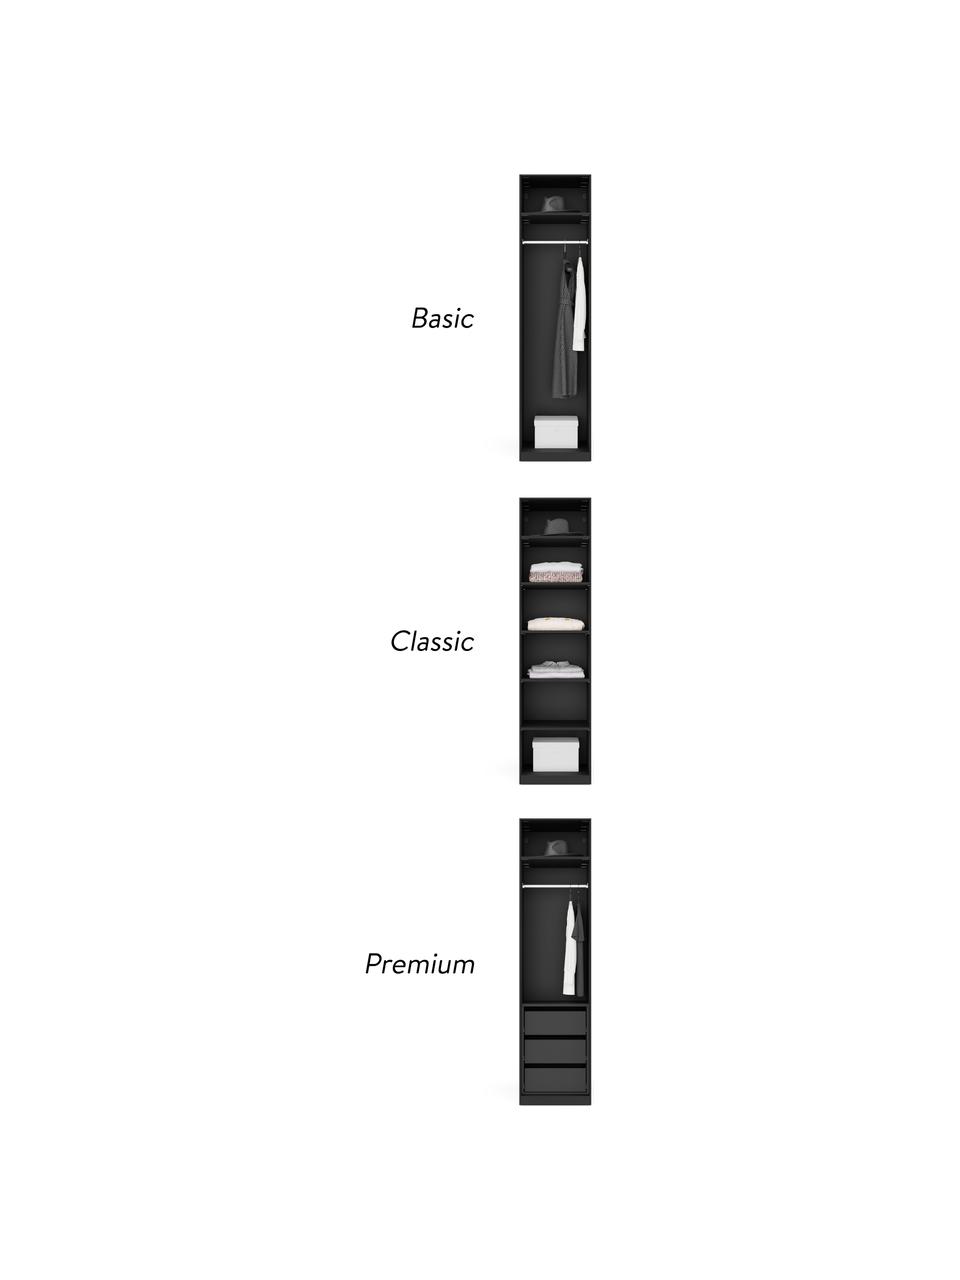 Modulárna šatníková skriňa s otočnými dverami Simone, šírka 50 cm, niekoľko variantov, Vzhľad orechového dreva, čierna, Basic, Š 50 x V 200 cm